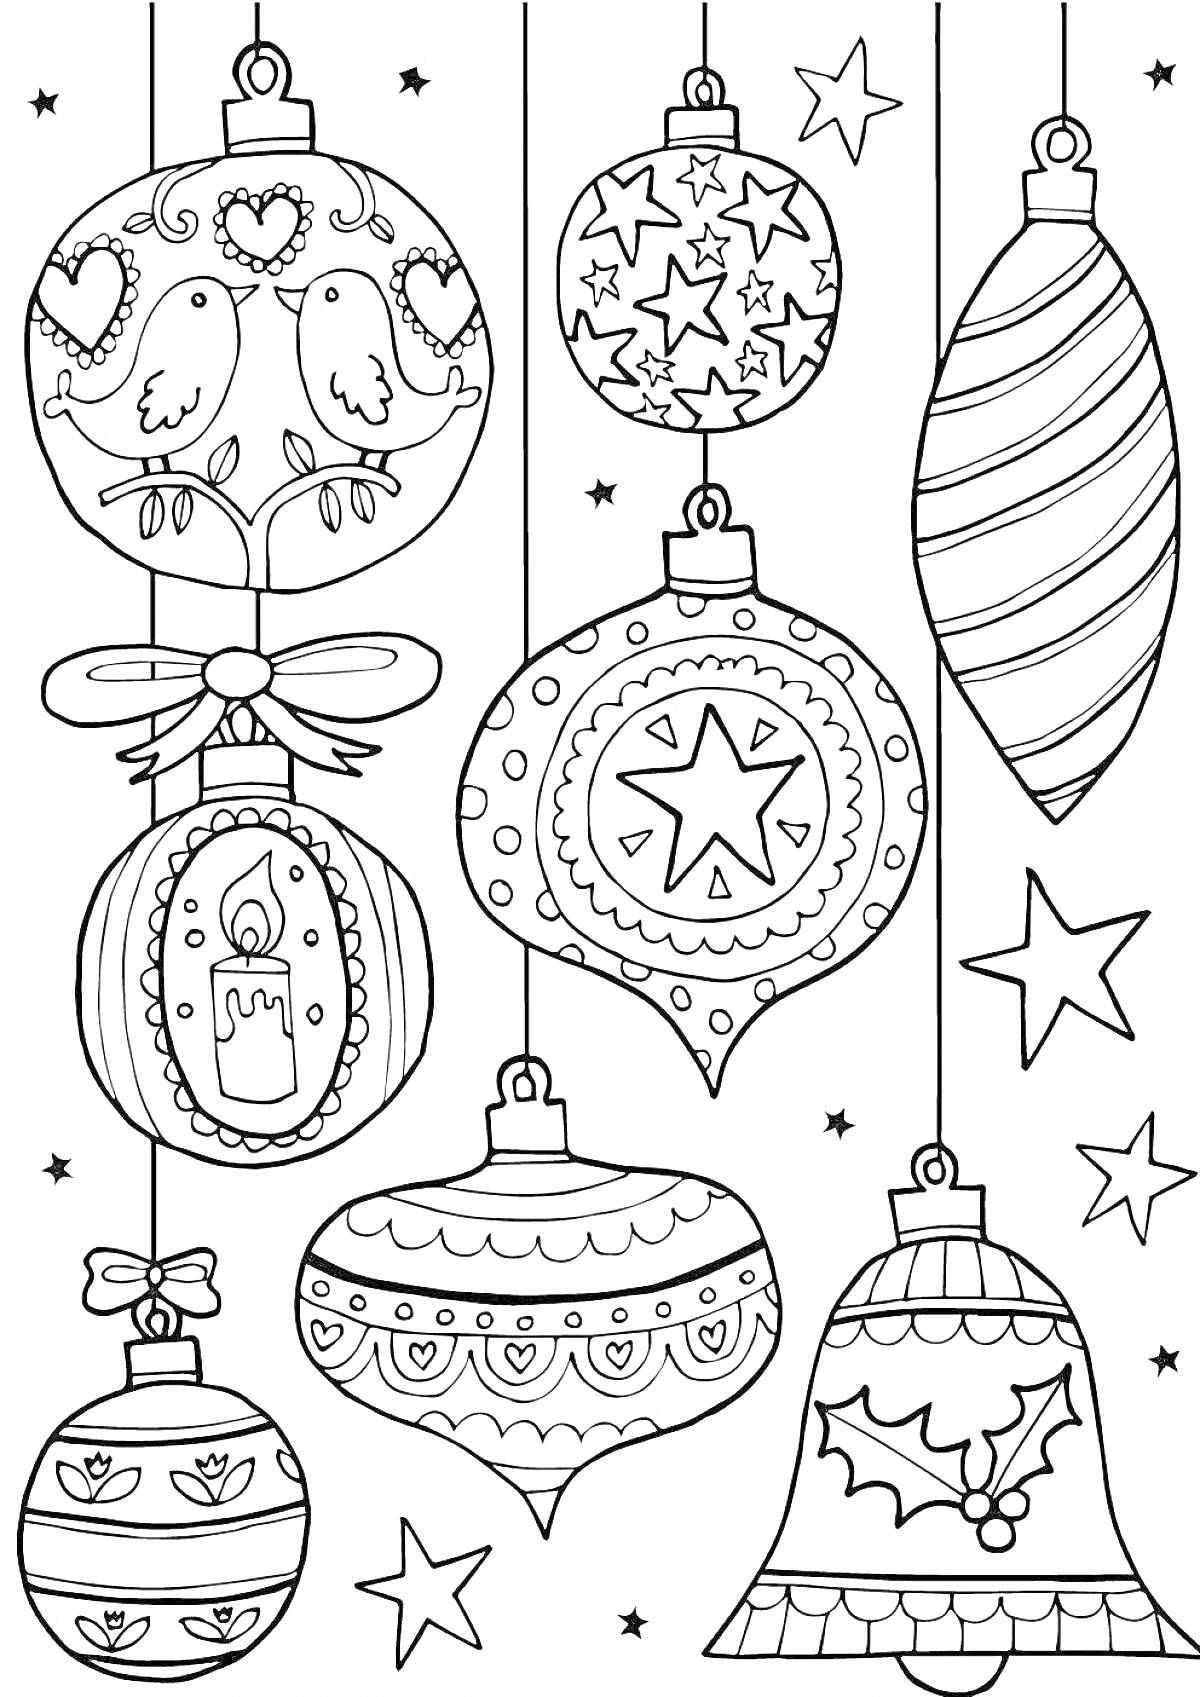 Раскраска Новогодний шар с птицами, звездами, свечой, ленточками, шарами, колоколом и бантом